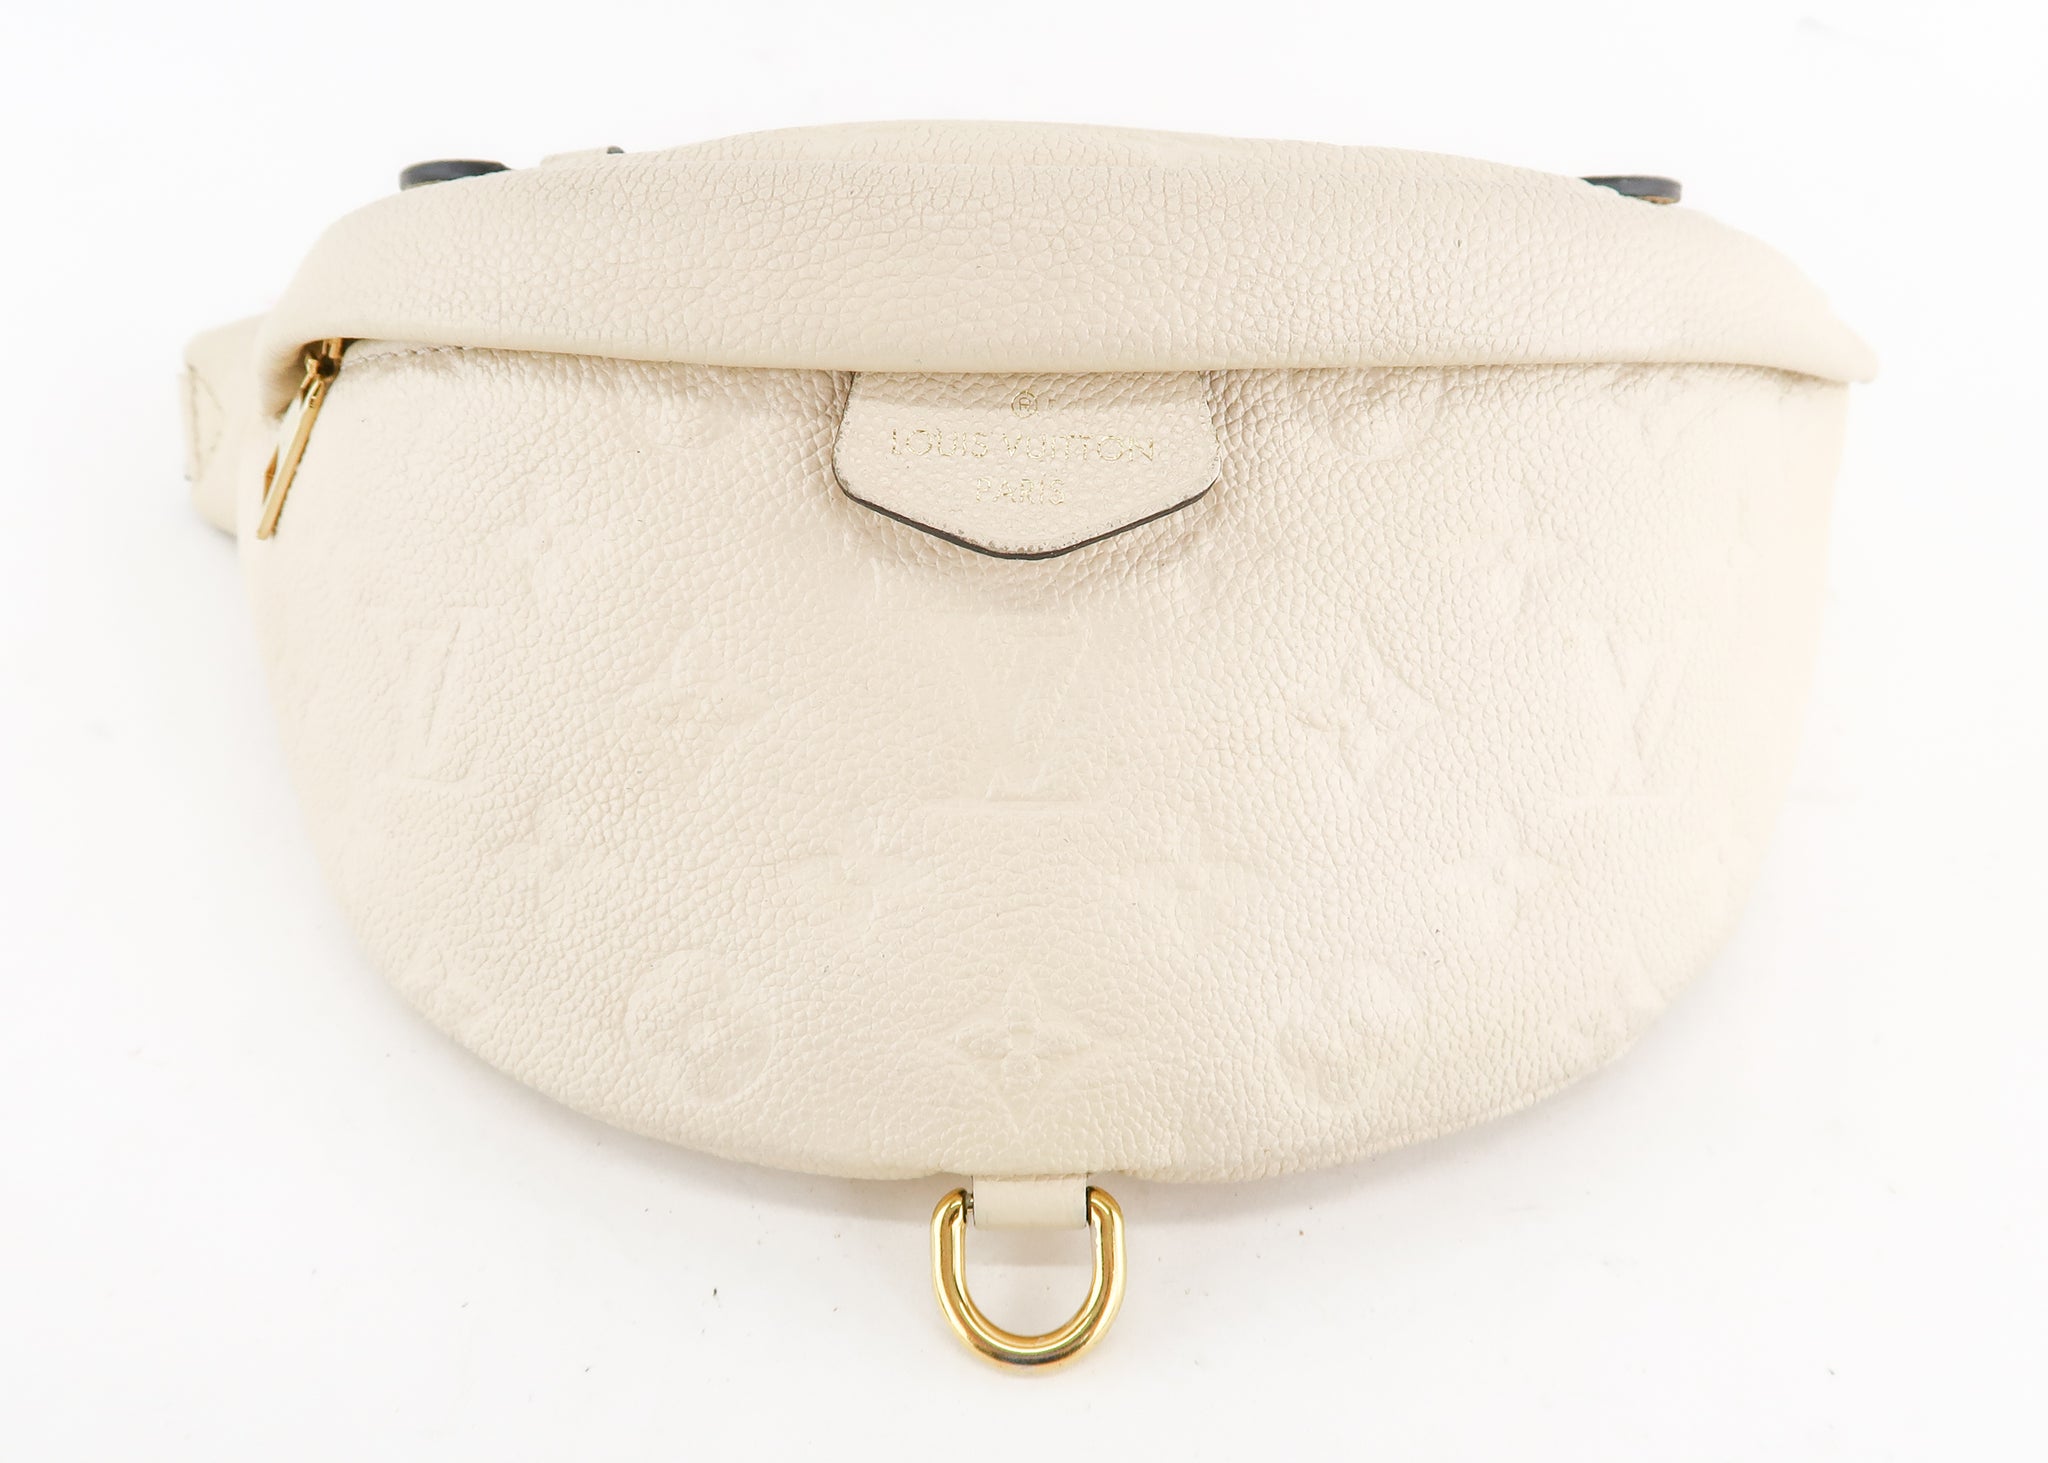 Louis Vuitton Bum Bag Review: Is it Worth it?